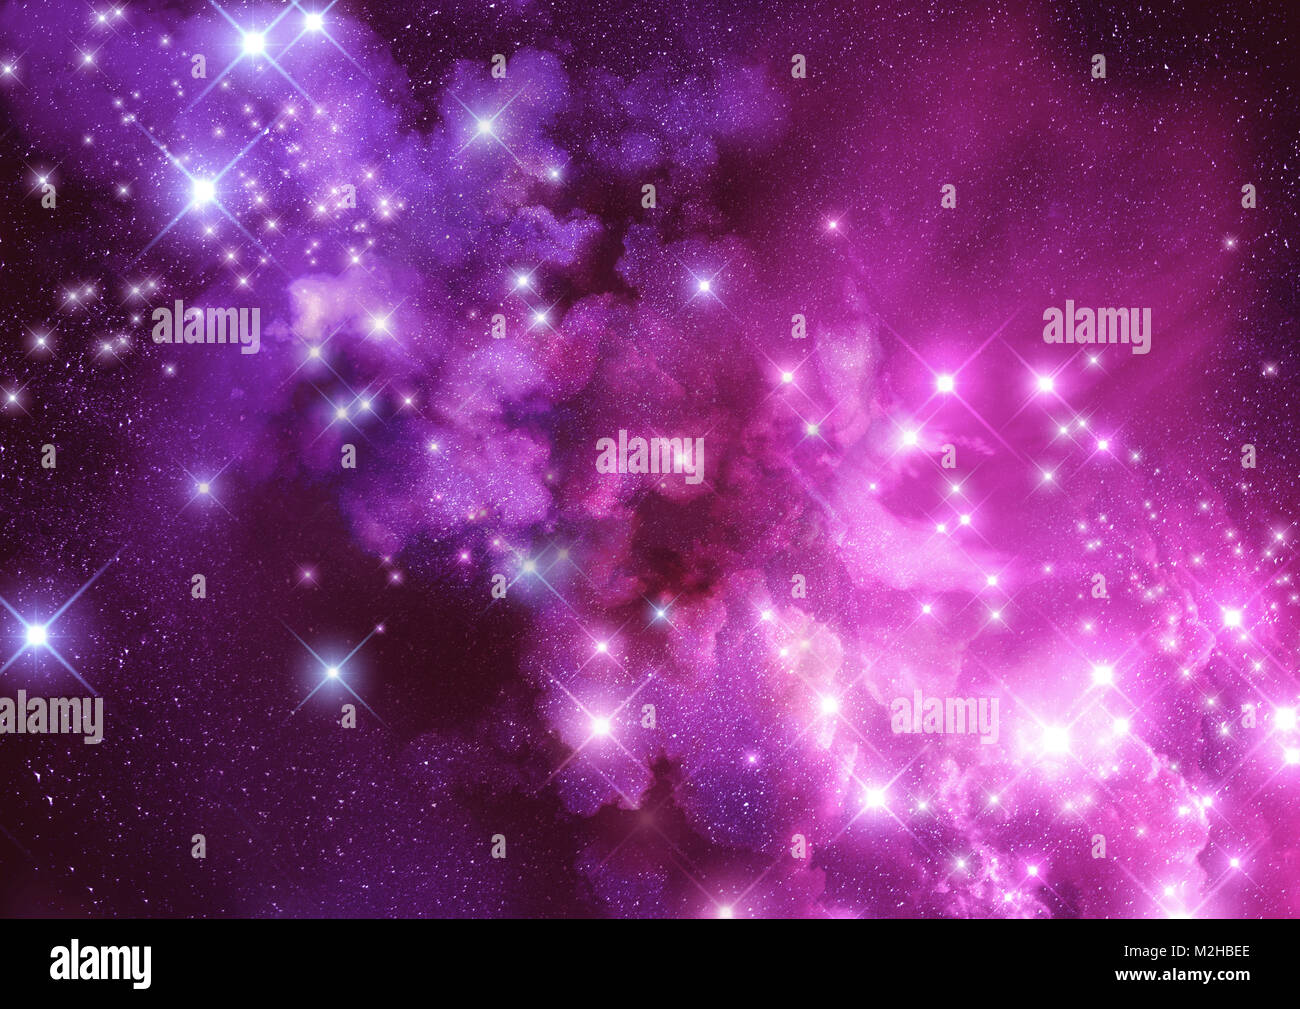 L'émerveillement et l'espace. Distance des étoiles et des nuages de poussière de la nébuleuse. Illustration Raster. Banque D'Images